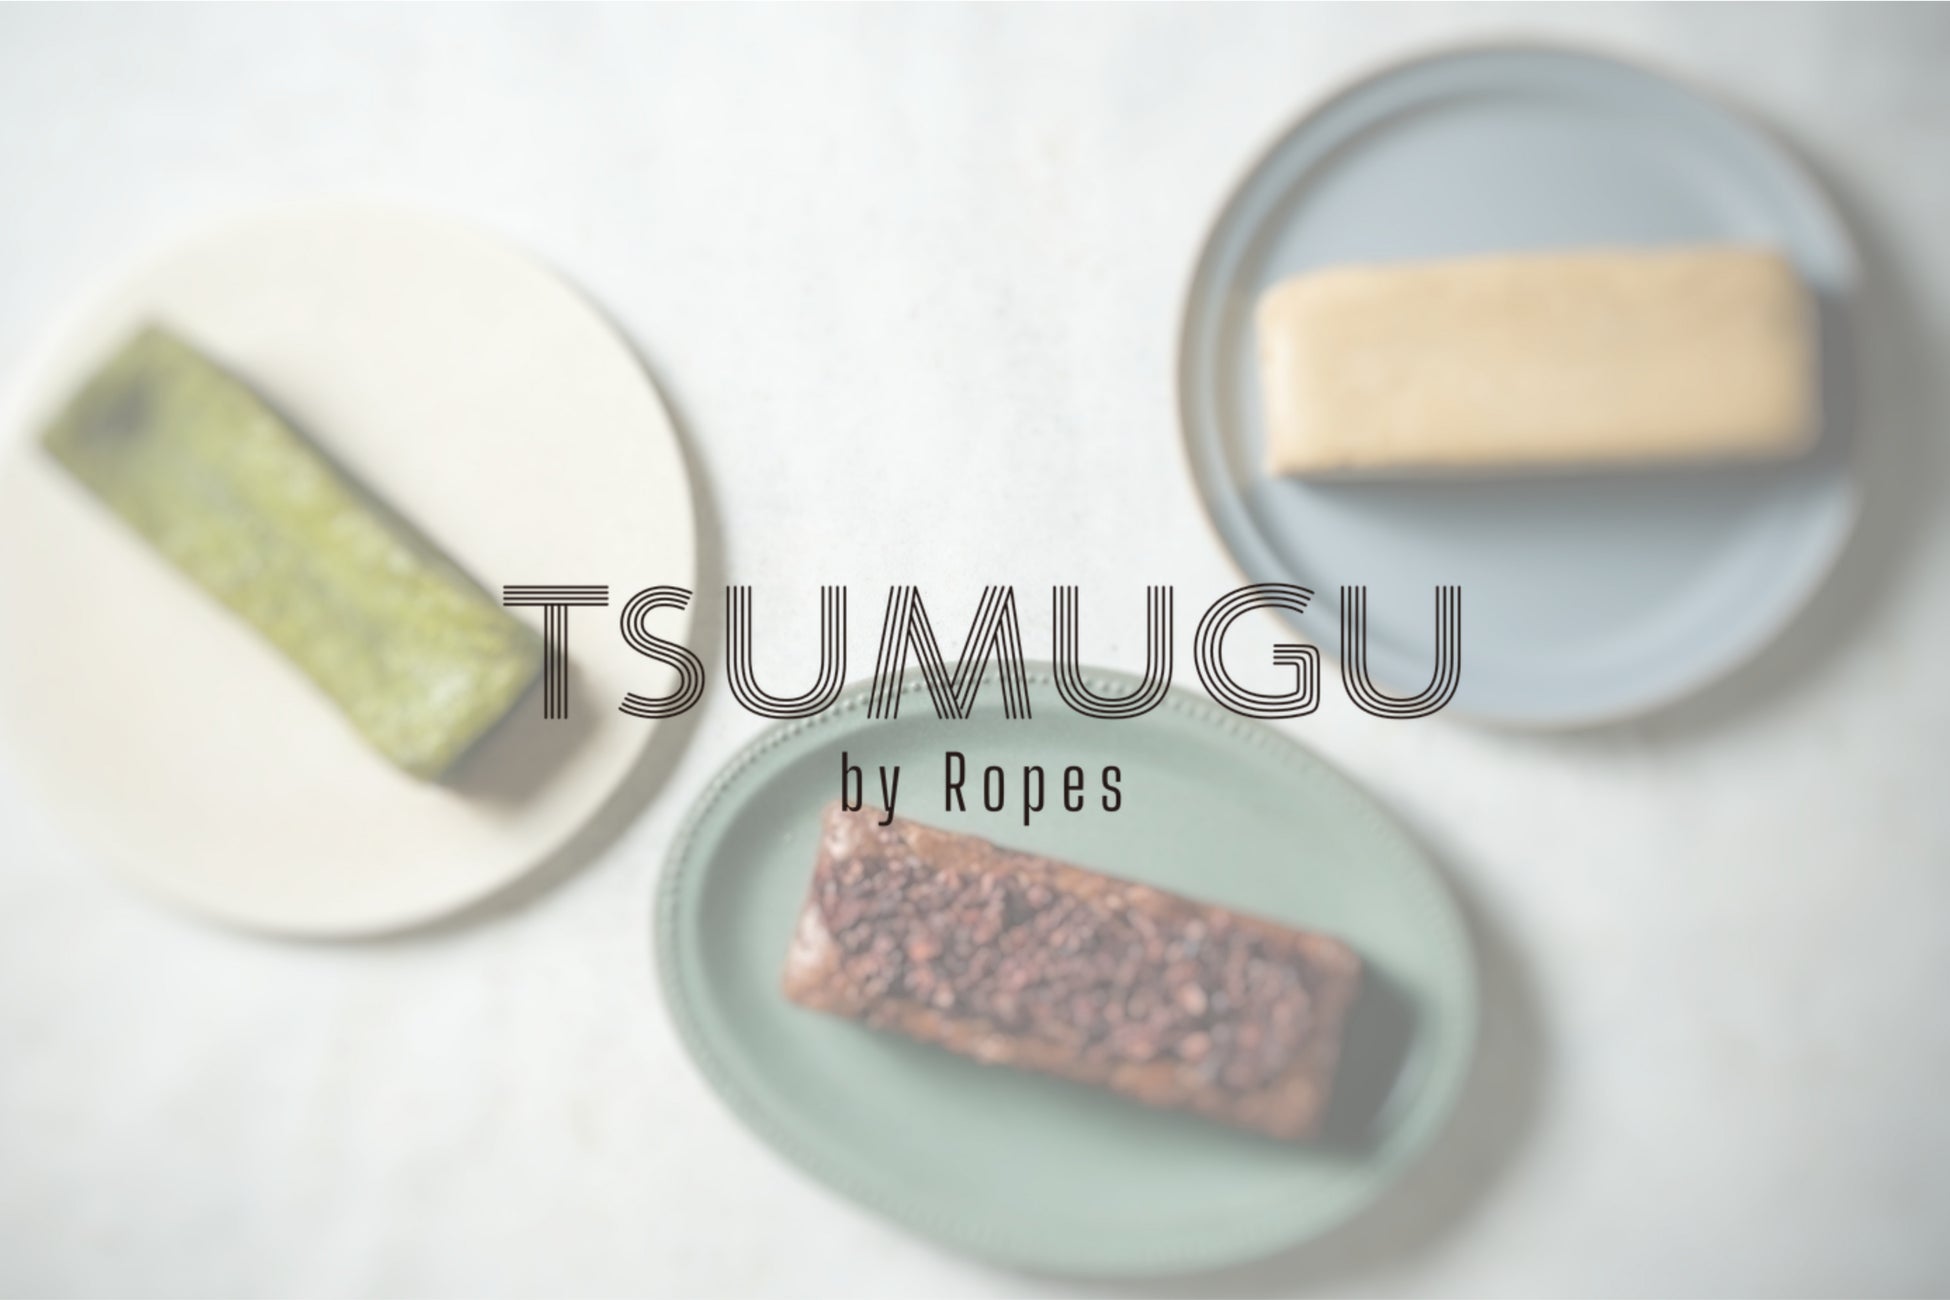 厳選食材で想いを紡ぐ、至福のケーキブランド『TSUMUGU by Ropes』誕生。Makuakeにて限定先行販売開始